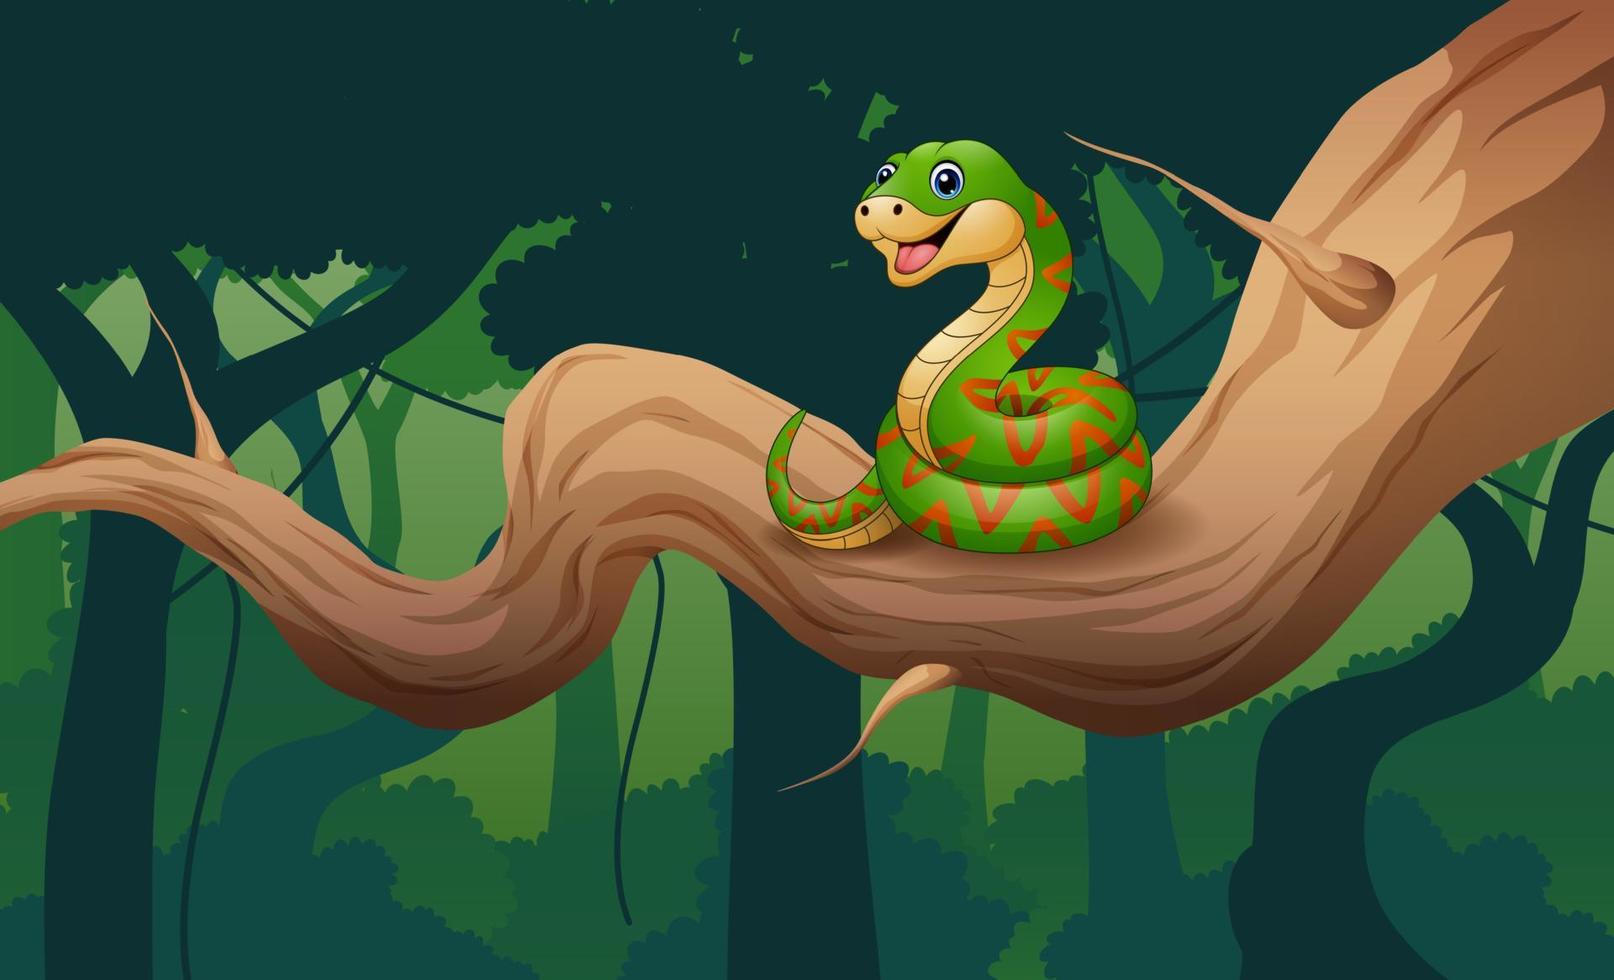 Cartoon of snake on a branch illustration vector